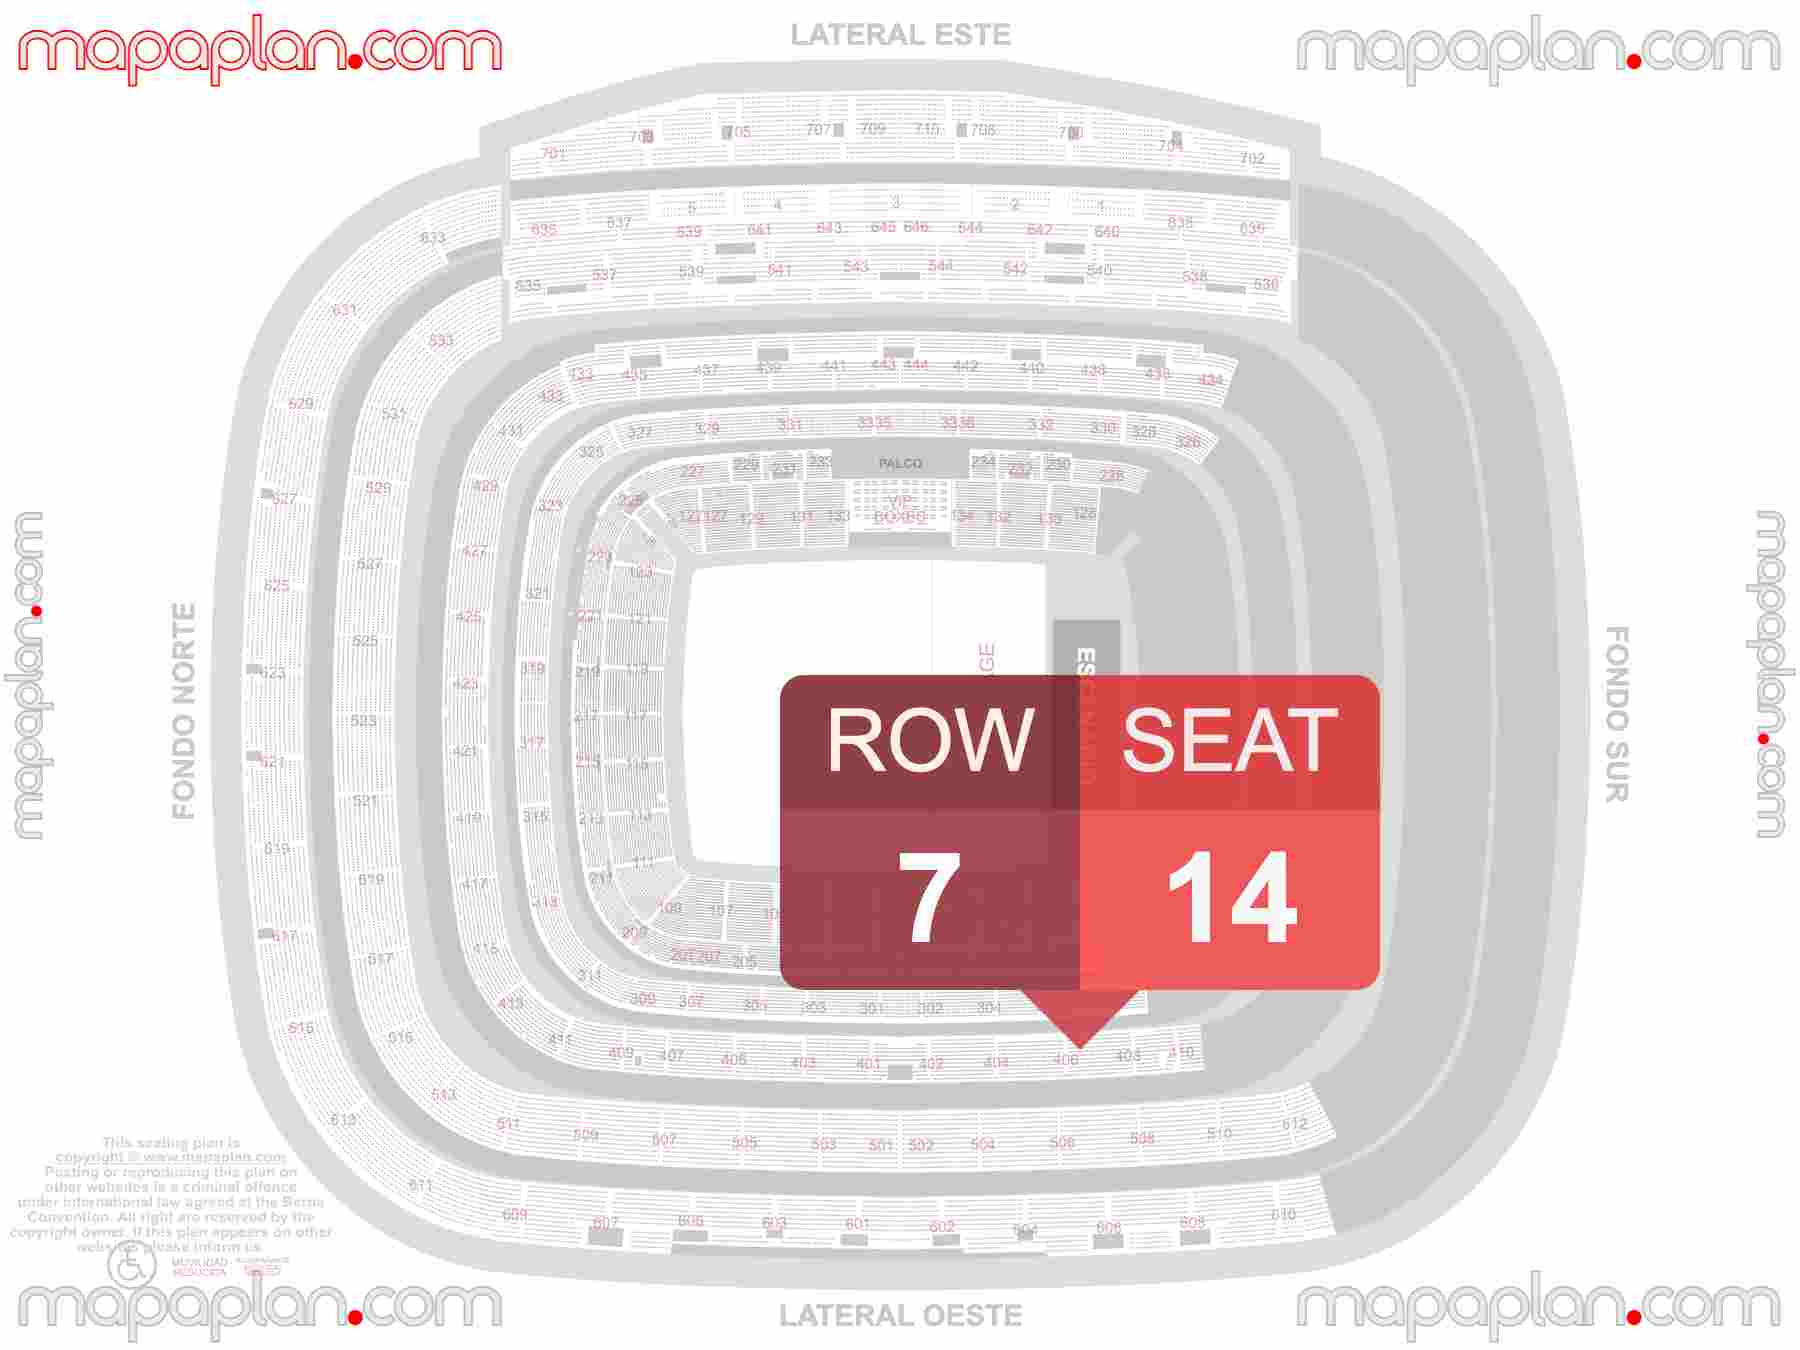 Madrid Santiago Bernabeu Estadio Stadium seating map Concerts (Conciertos plano de asientos con numeros de asiento y fila) find best seats row numbering system plan showing how many seats per row - Individual 'find my seat' virtual locator